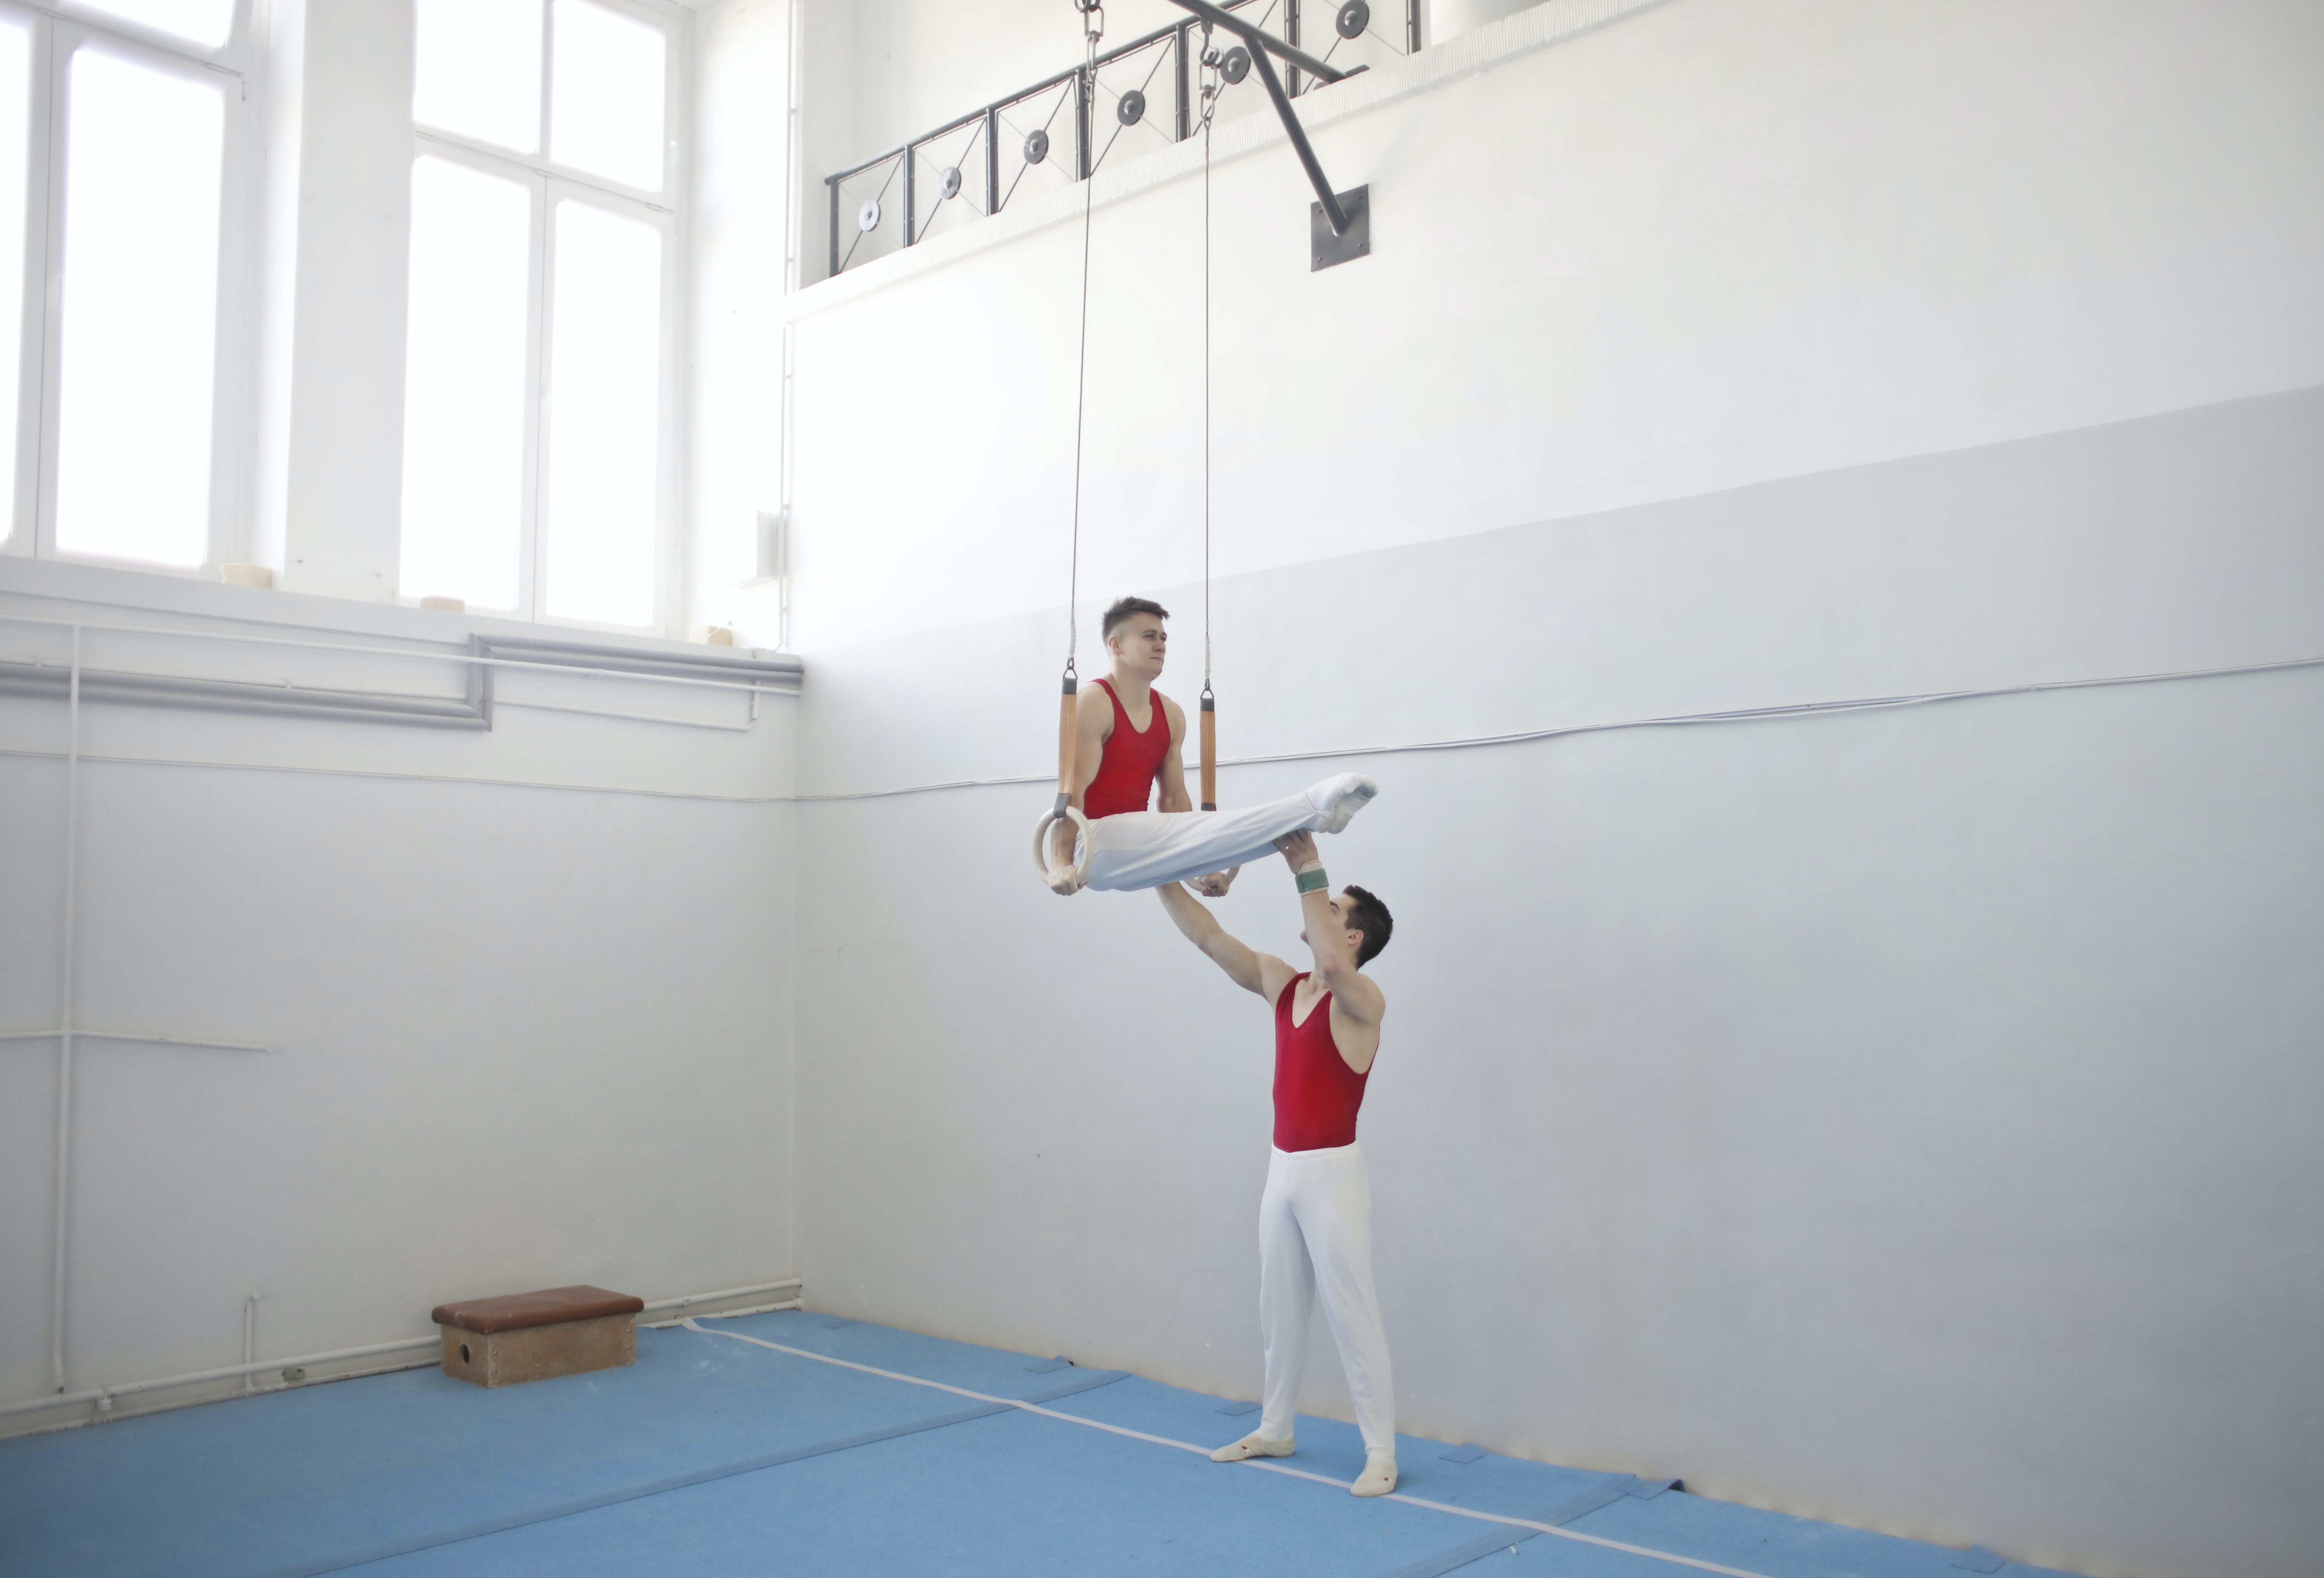 En la imagen se muestran dos atletas de rojo y blanco entrenando en un gimnasio, uno de ellos ayudando al segundo a sostenerse agarrado a unos aros.